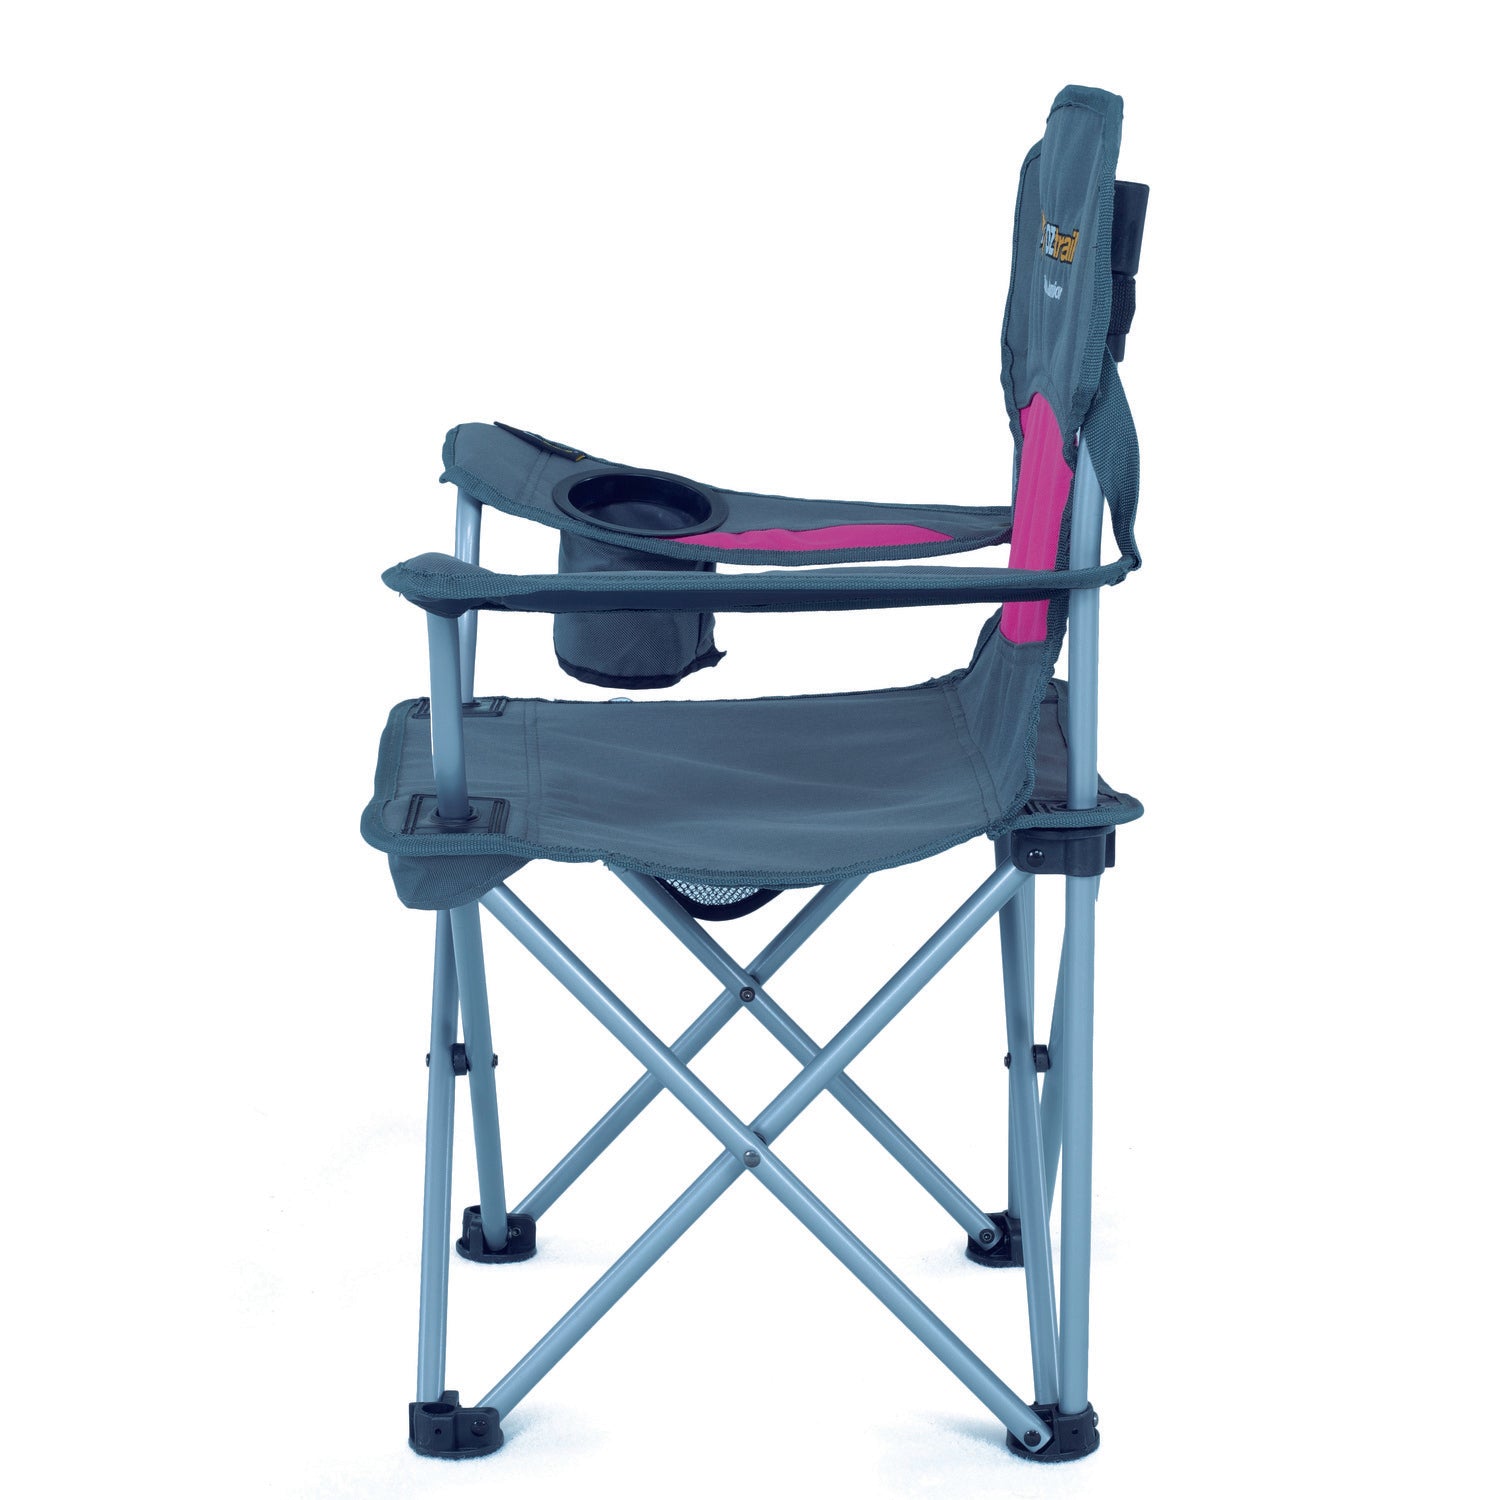 Deluxe Junior Chair Pink